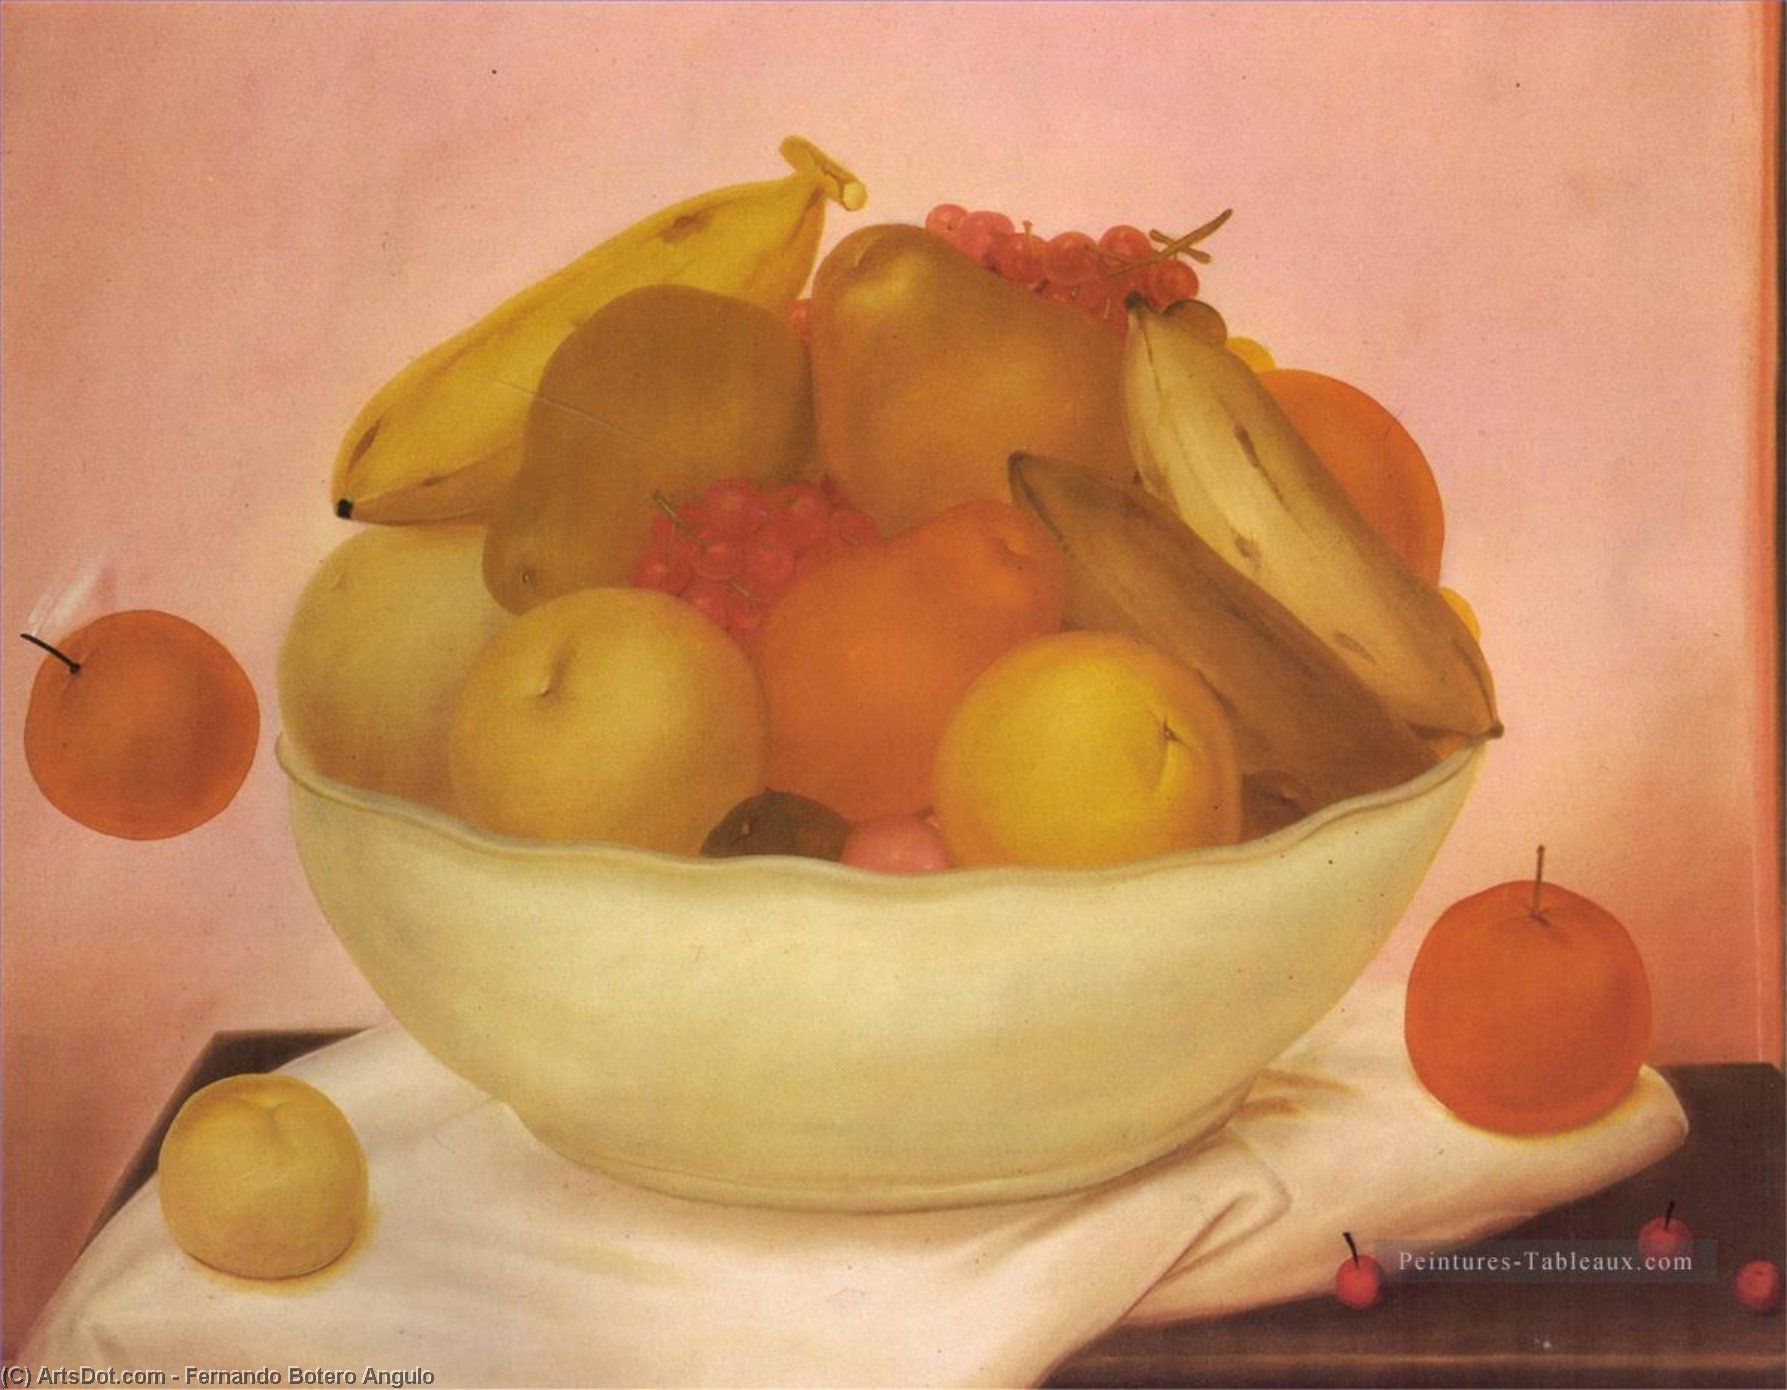 Wikioo.org - Bách khoa toàn thư về mỹ thuật - Vẽ tranh, Tác phẩm nghệ thuật Fernando Botero Angulo - nature morte à l'orange qui tombe